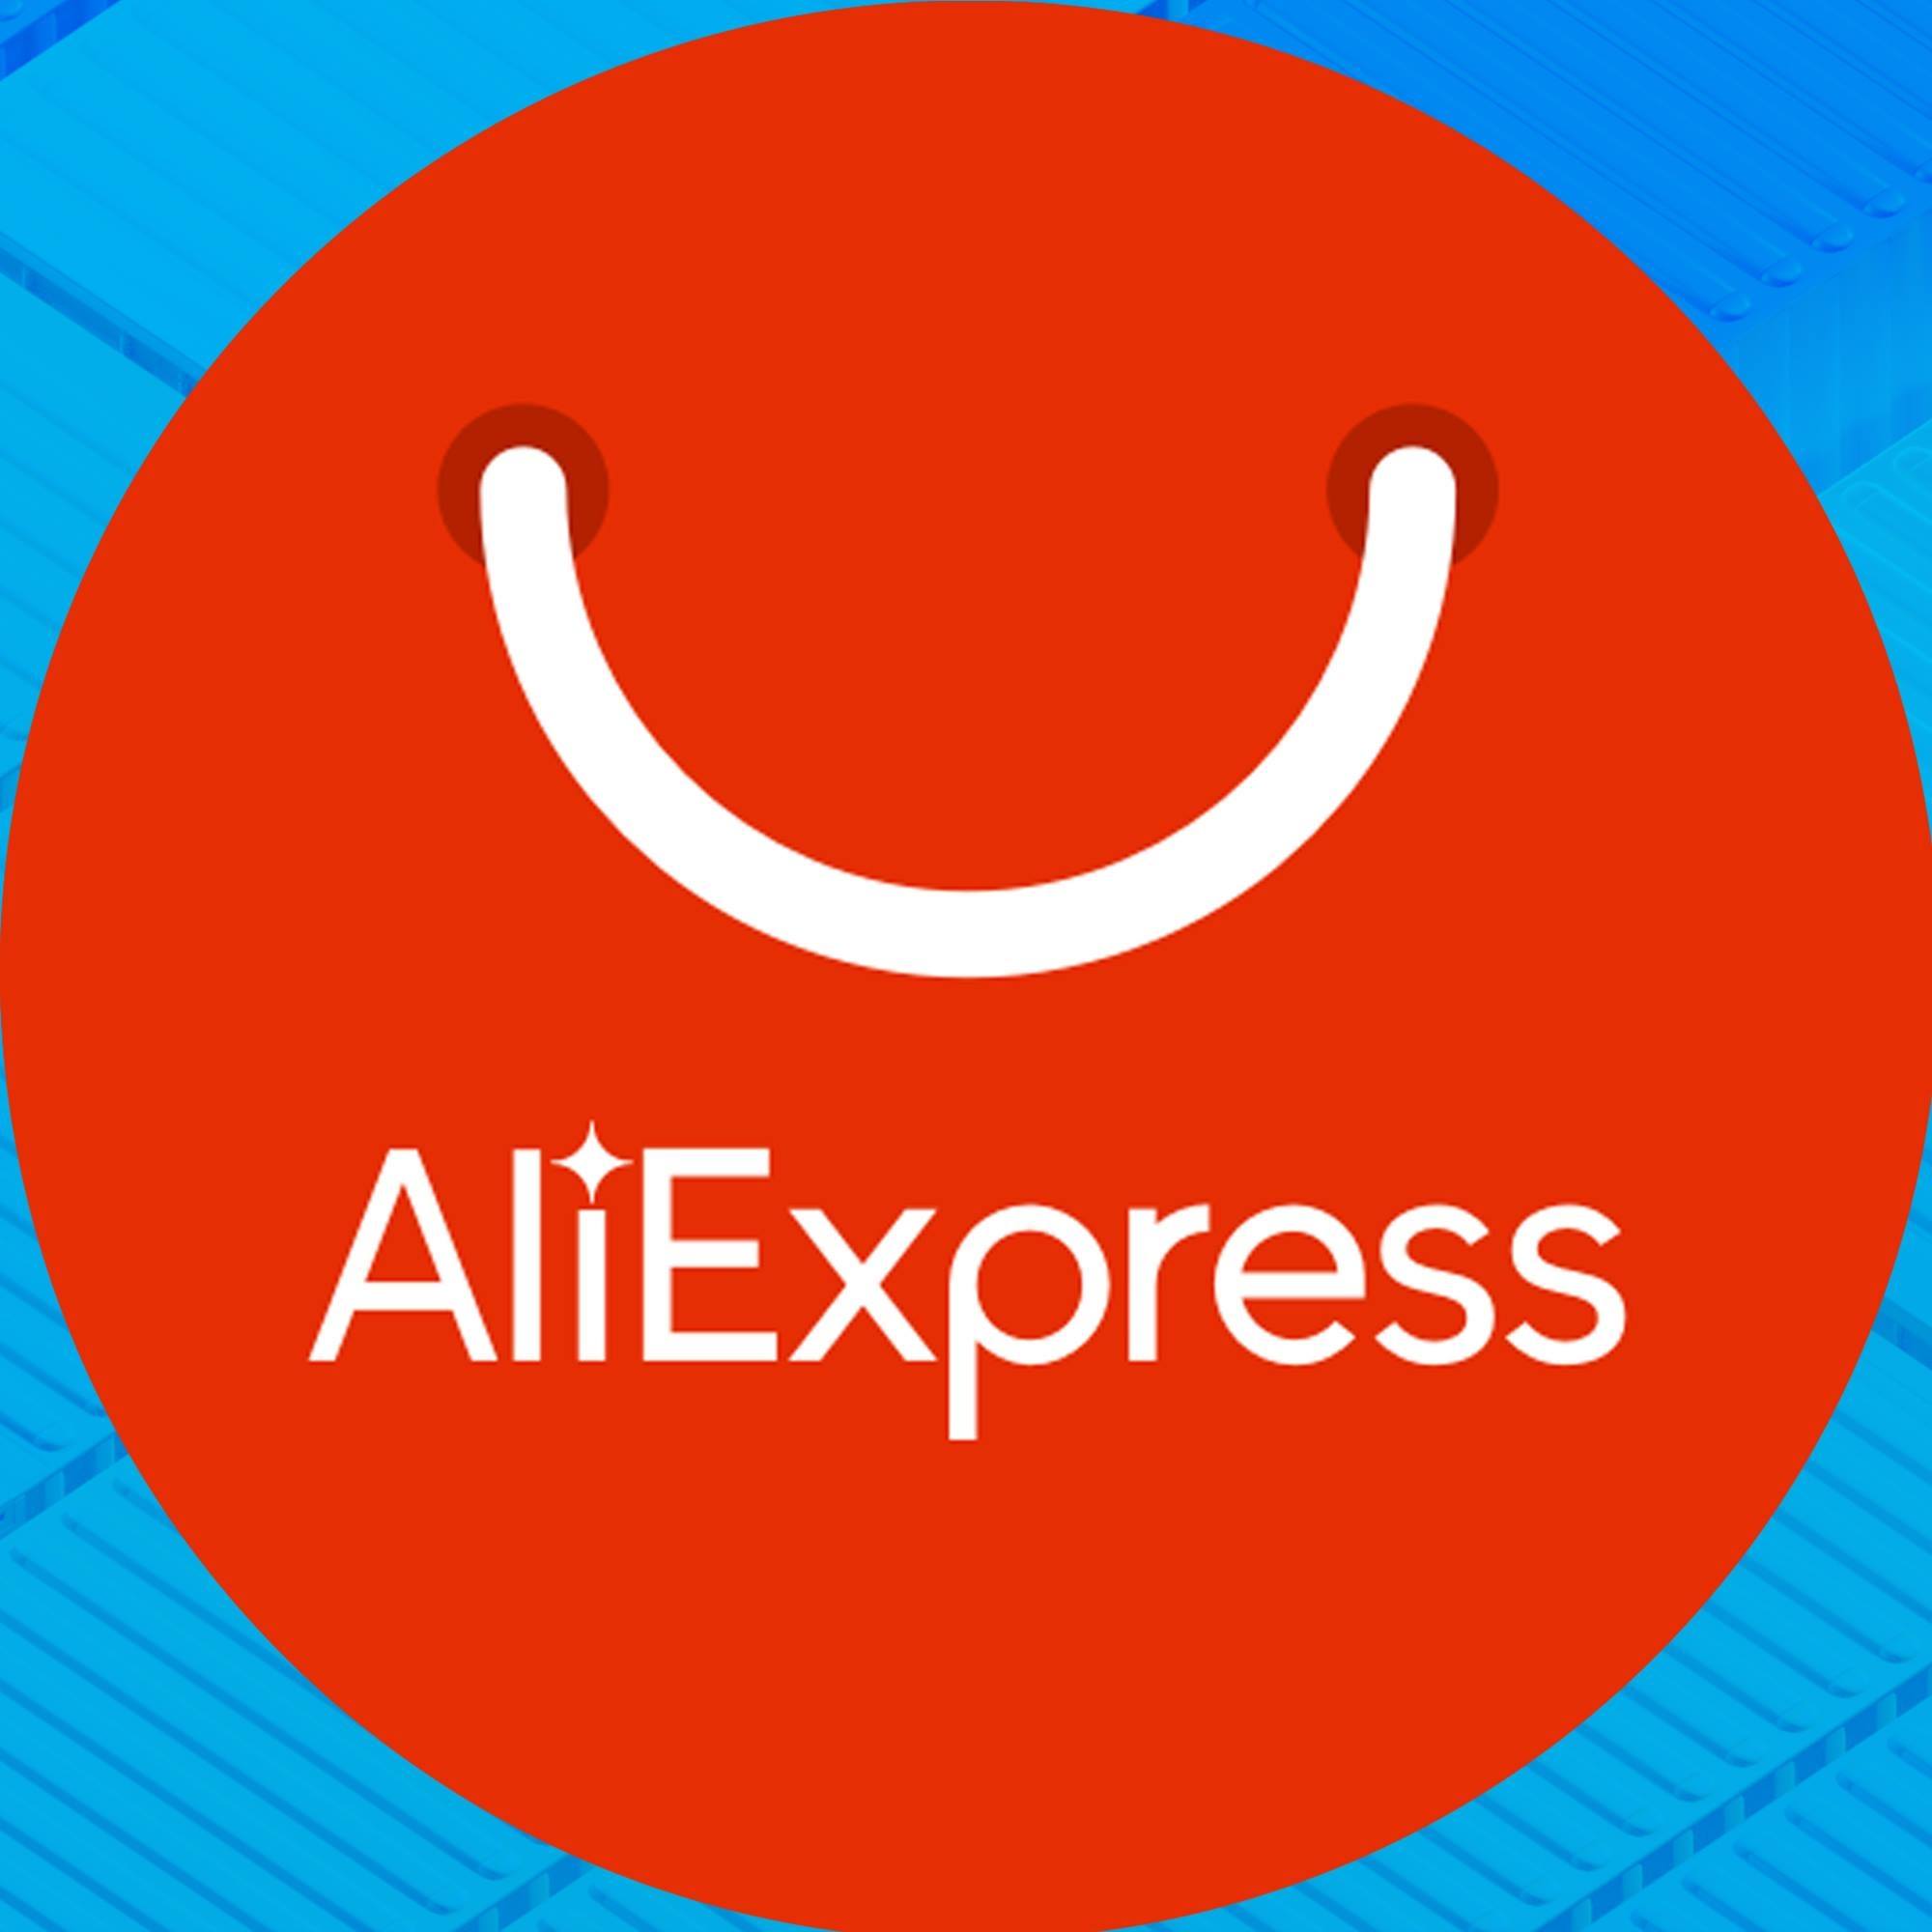 Company logo of Aliexpress